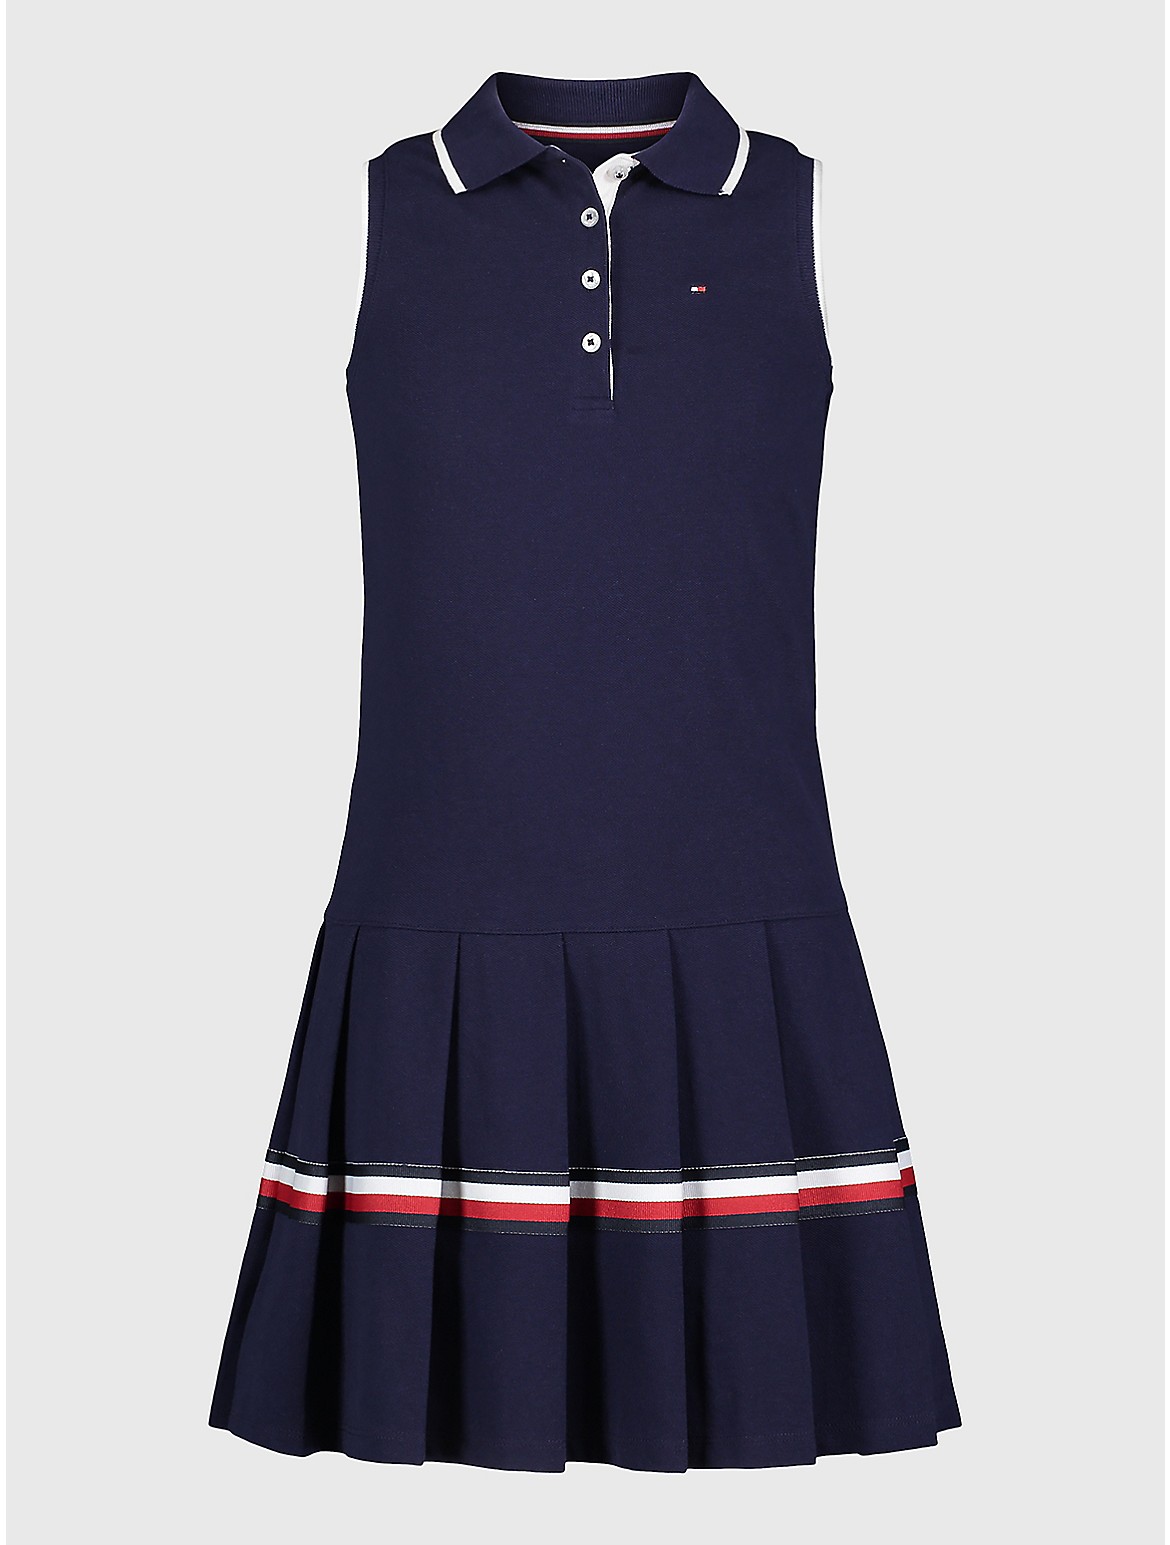 Tommy Hilfiger Girls' Big Kids' Pleated Polo Dress - Blue - L